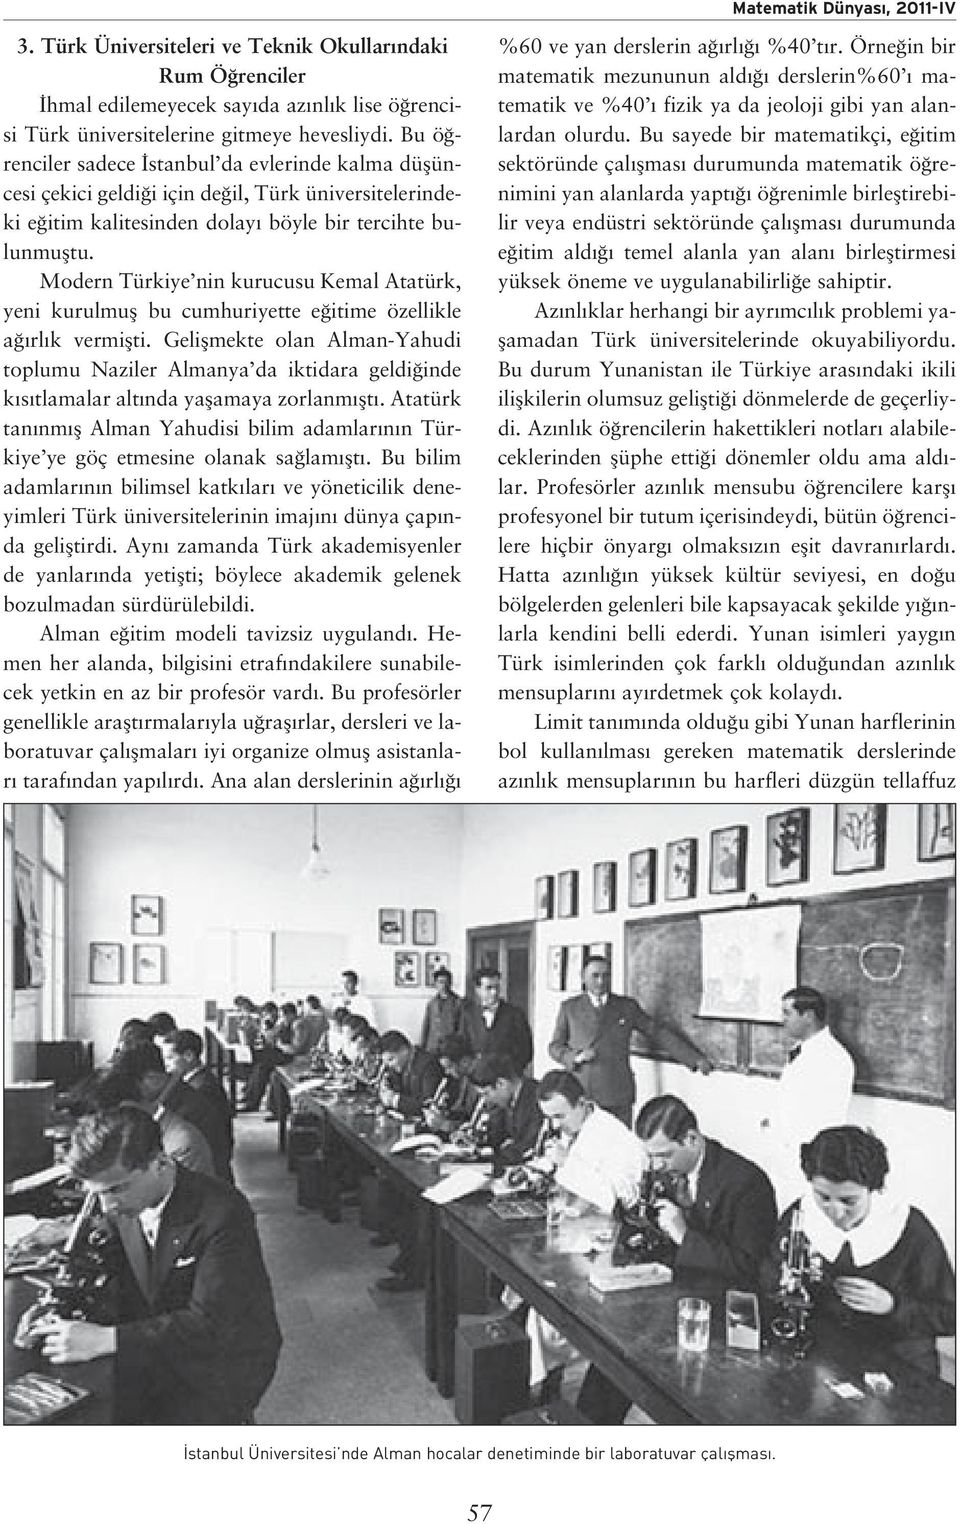 Modern Türkiye nin kurucusu Kemal Atatürk, yeni kurulmufl bu cumhuriyette e itime özellikle a rl k vermiflti.